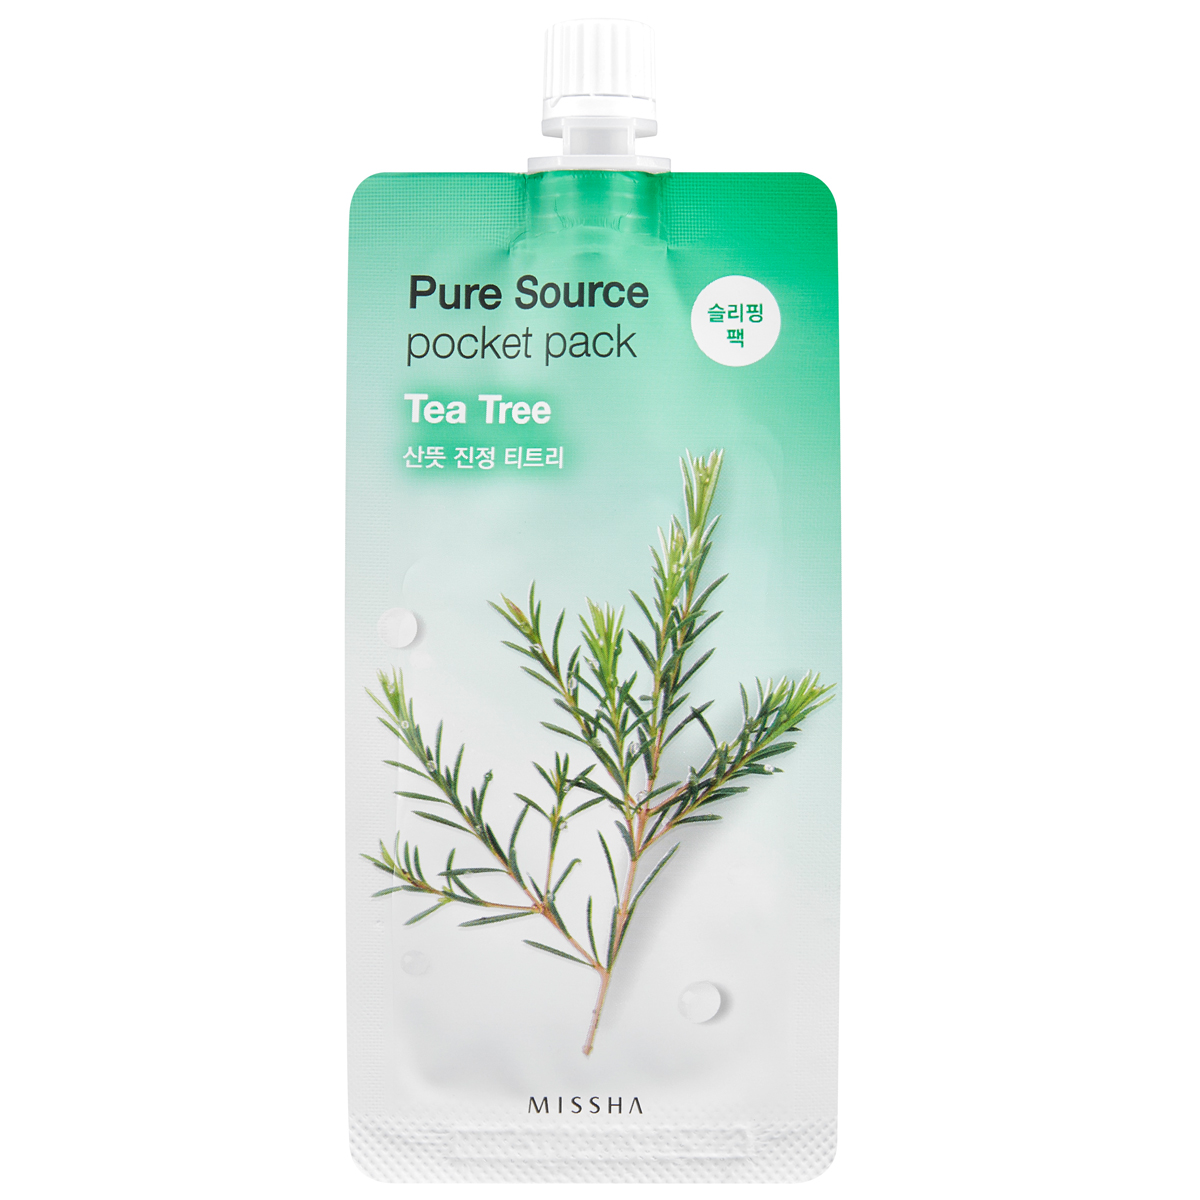 Pure Source Pocket Pack (Tea Tree),  MISSHA K Beauty Masker